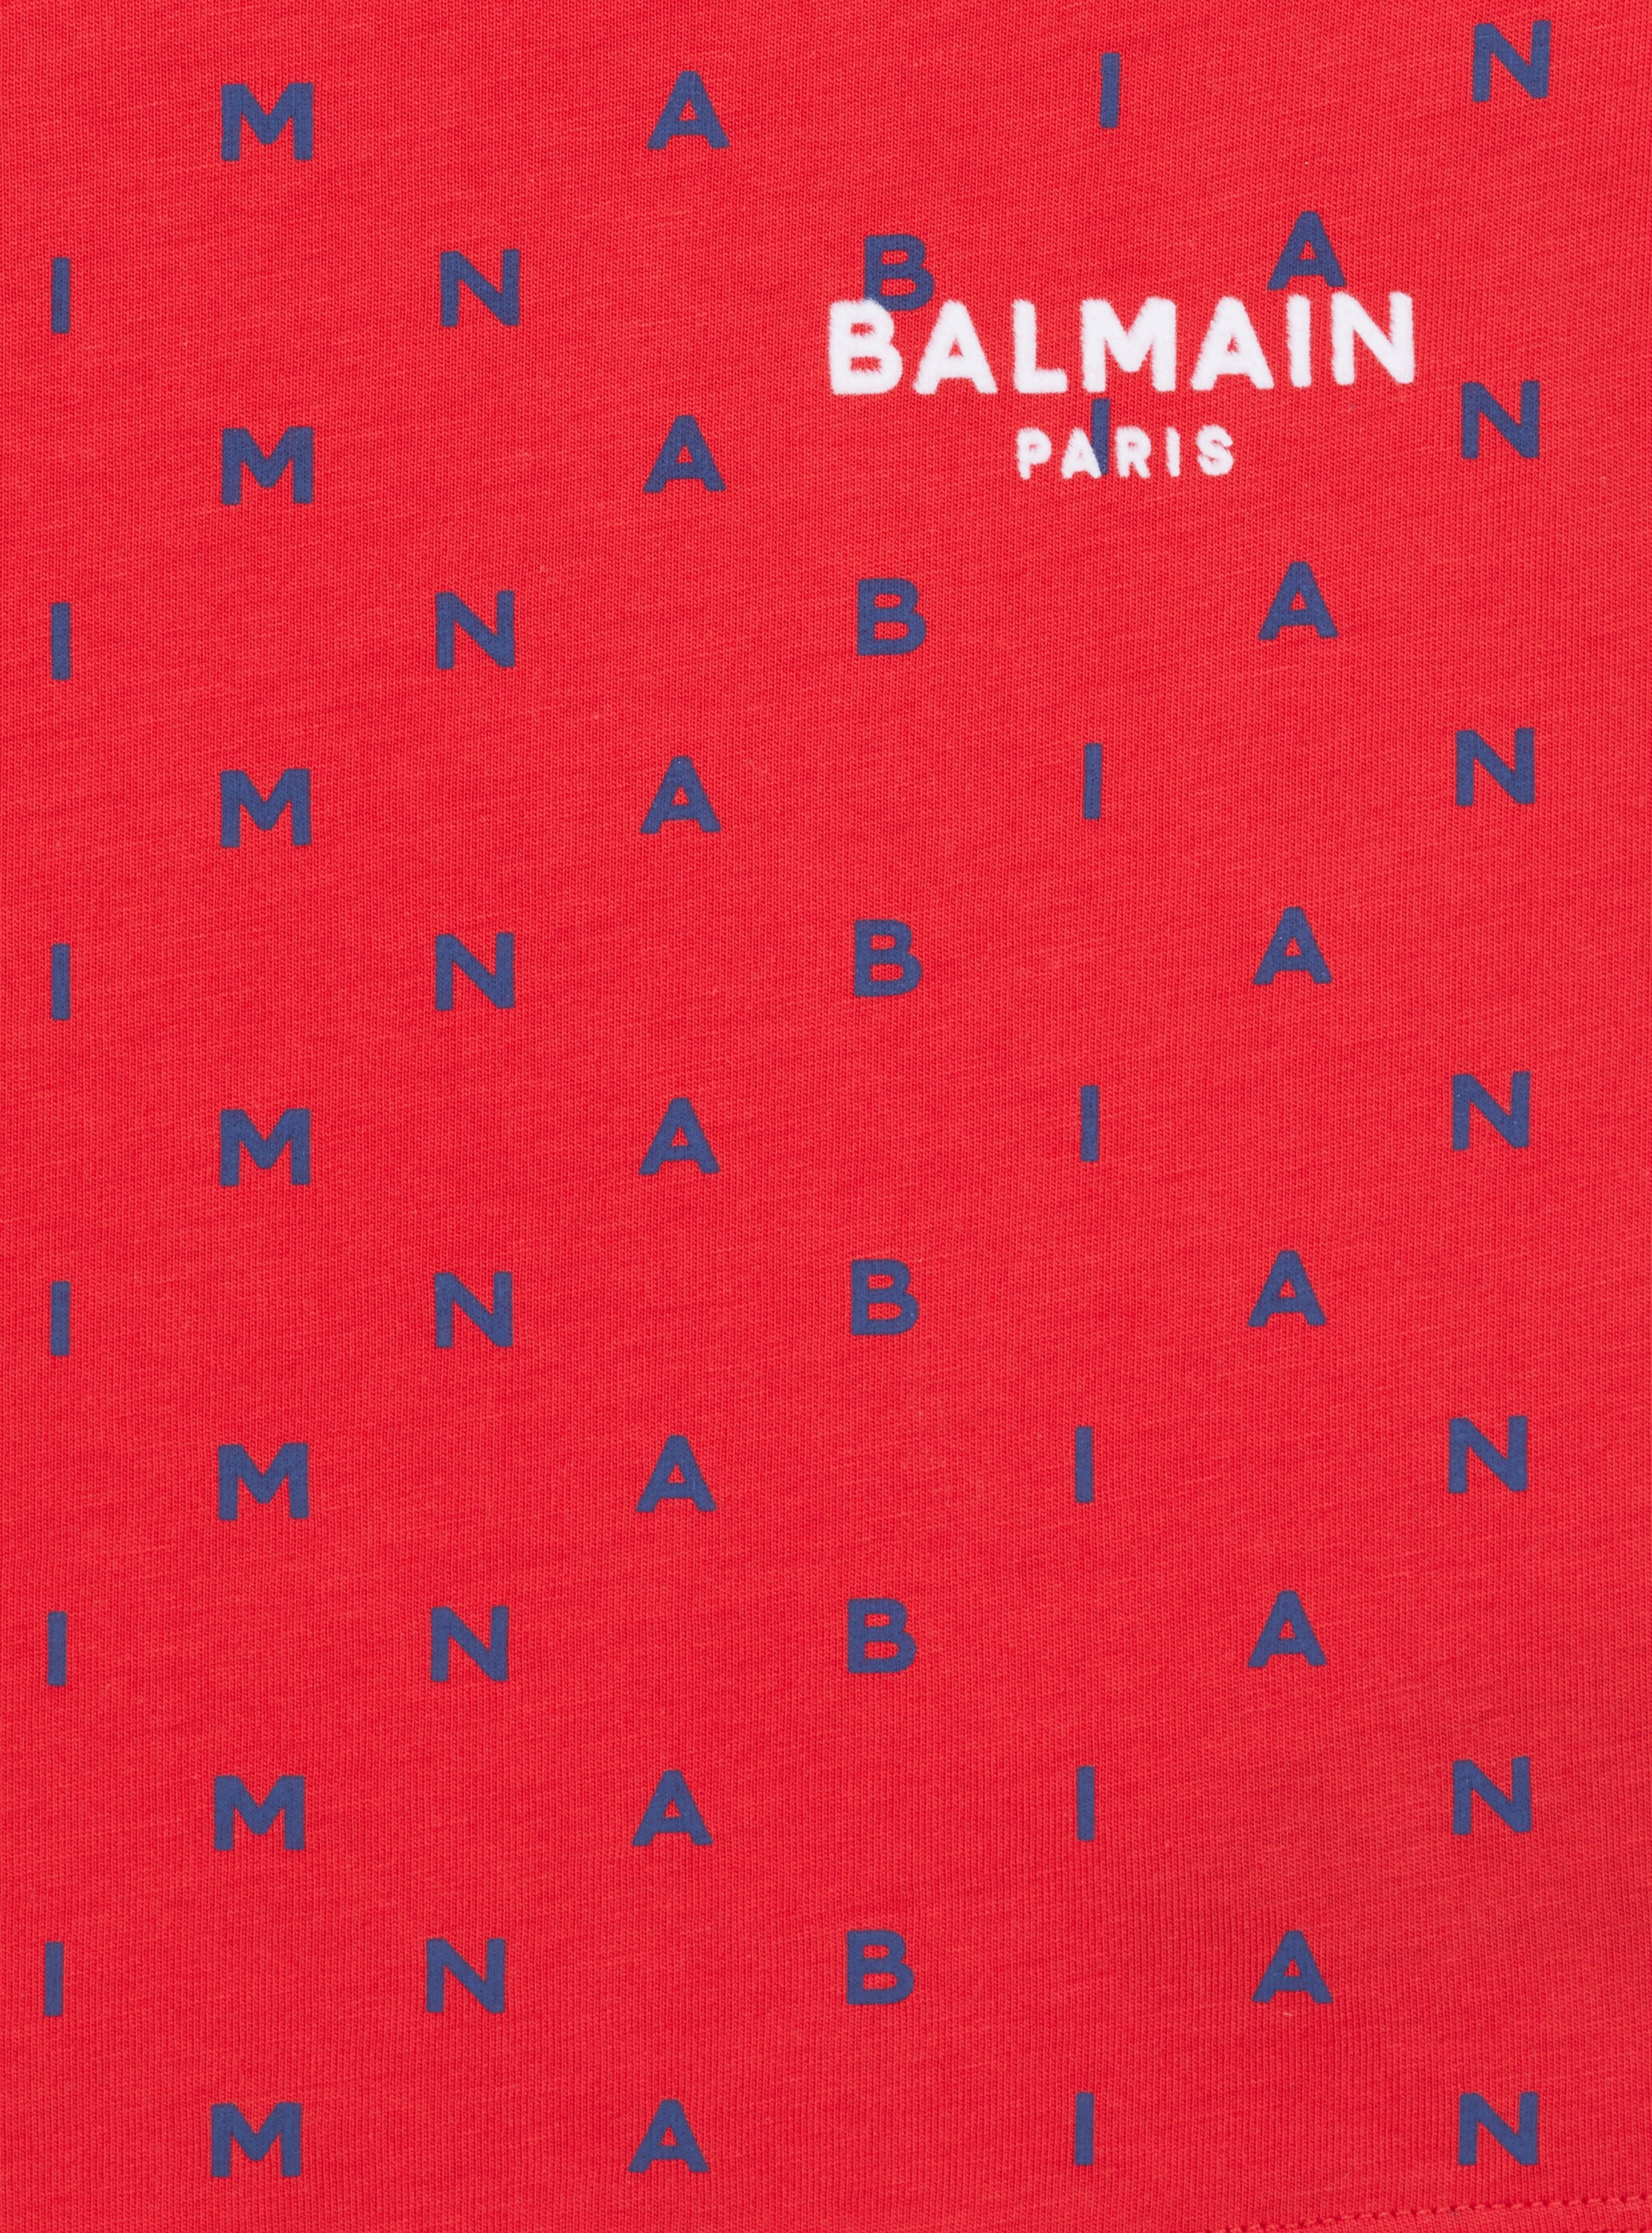 T-shirt Balmain Lettres